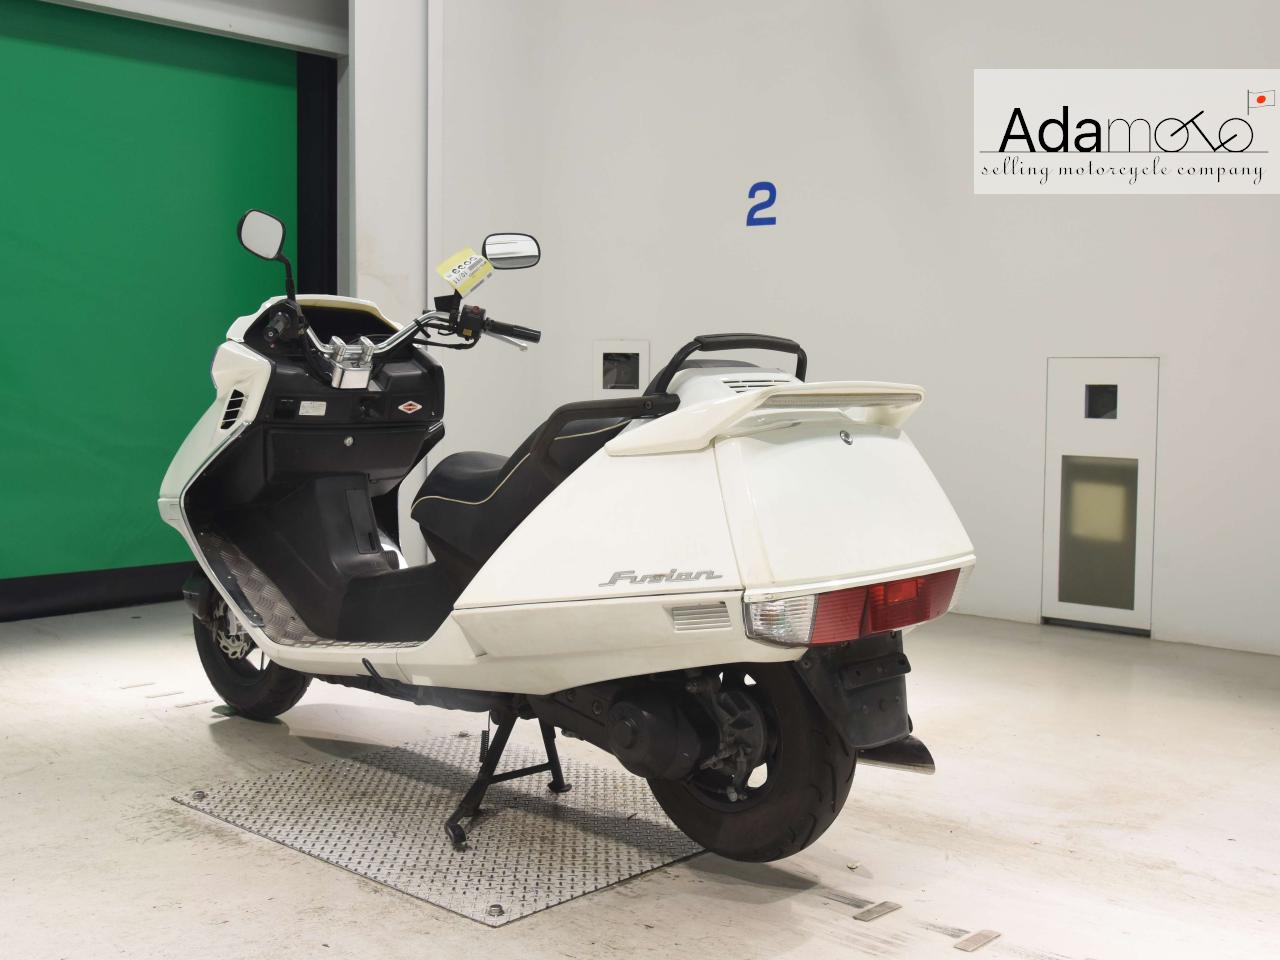 Honda FUSION XSE - Adamoto - Motorcycles from Japan